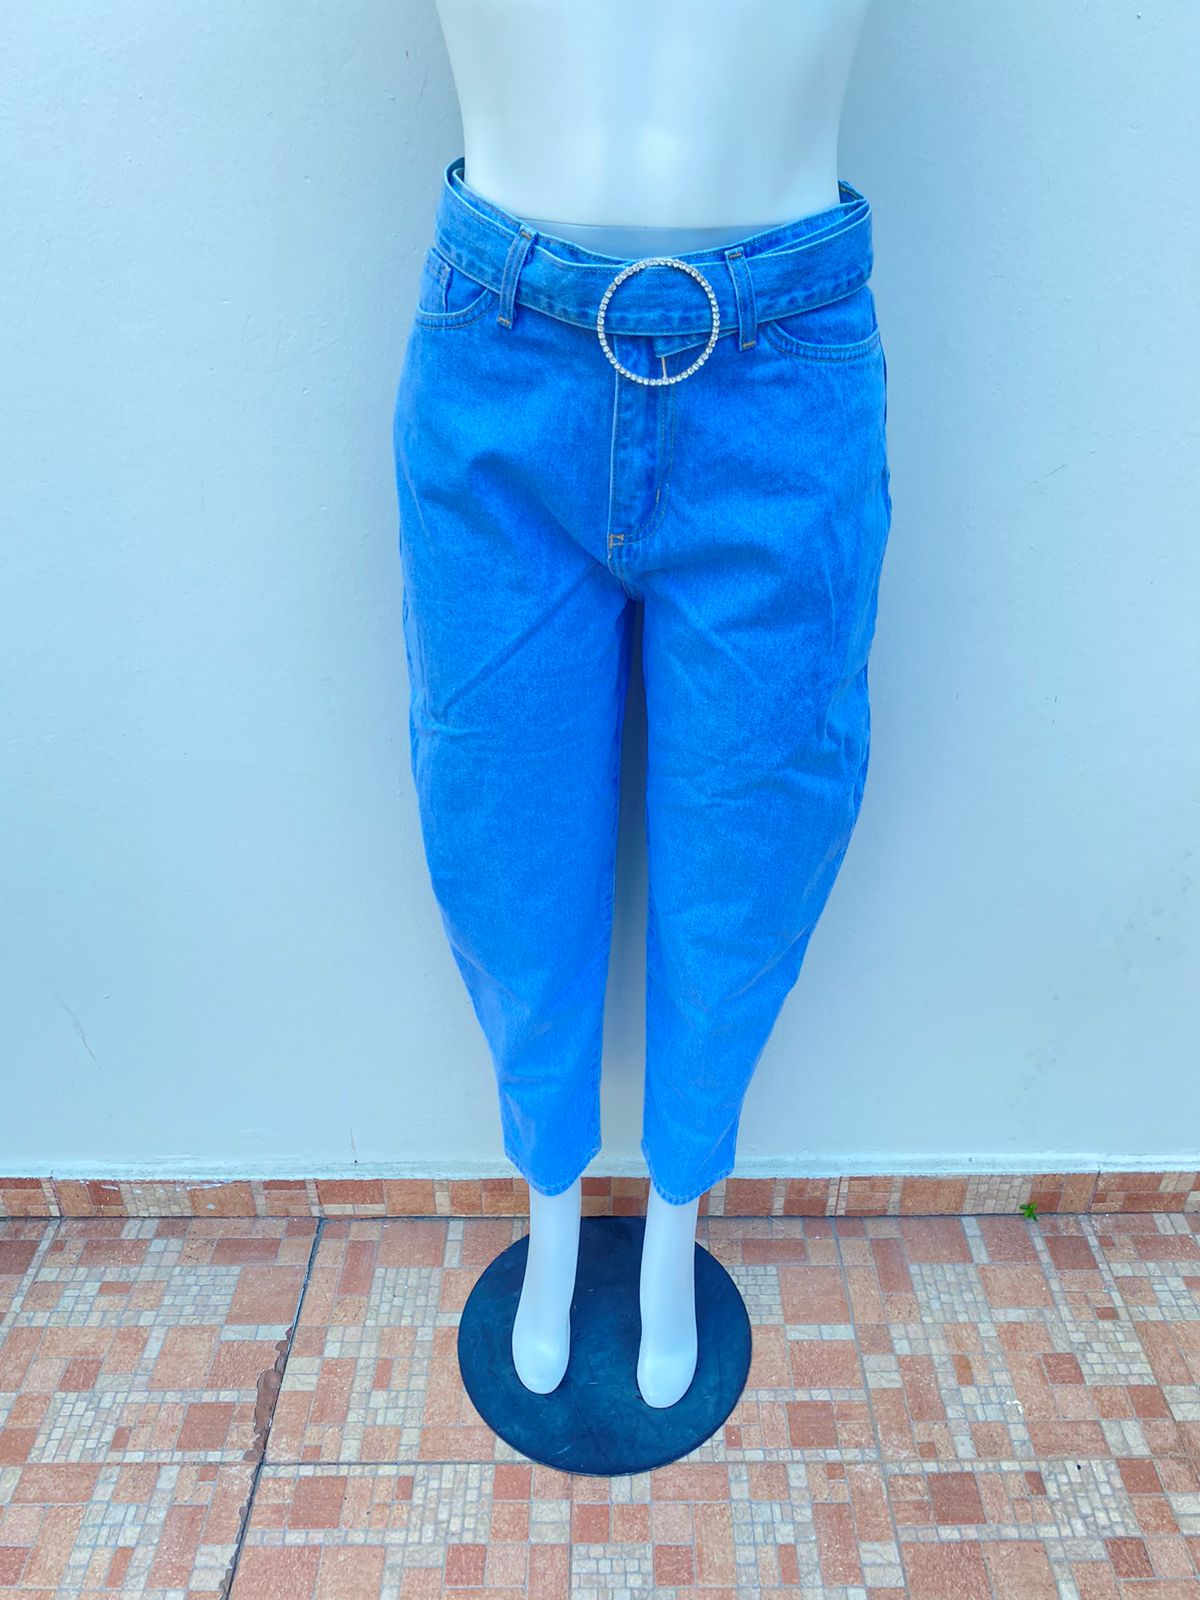 Pantalón Jean Fashion Nova original azul claro liso, BALLOON, con correa adicional.